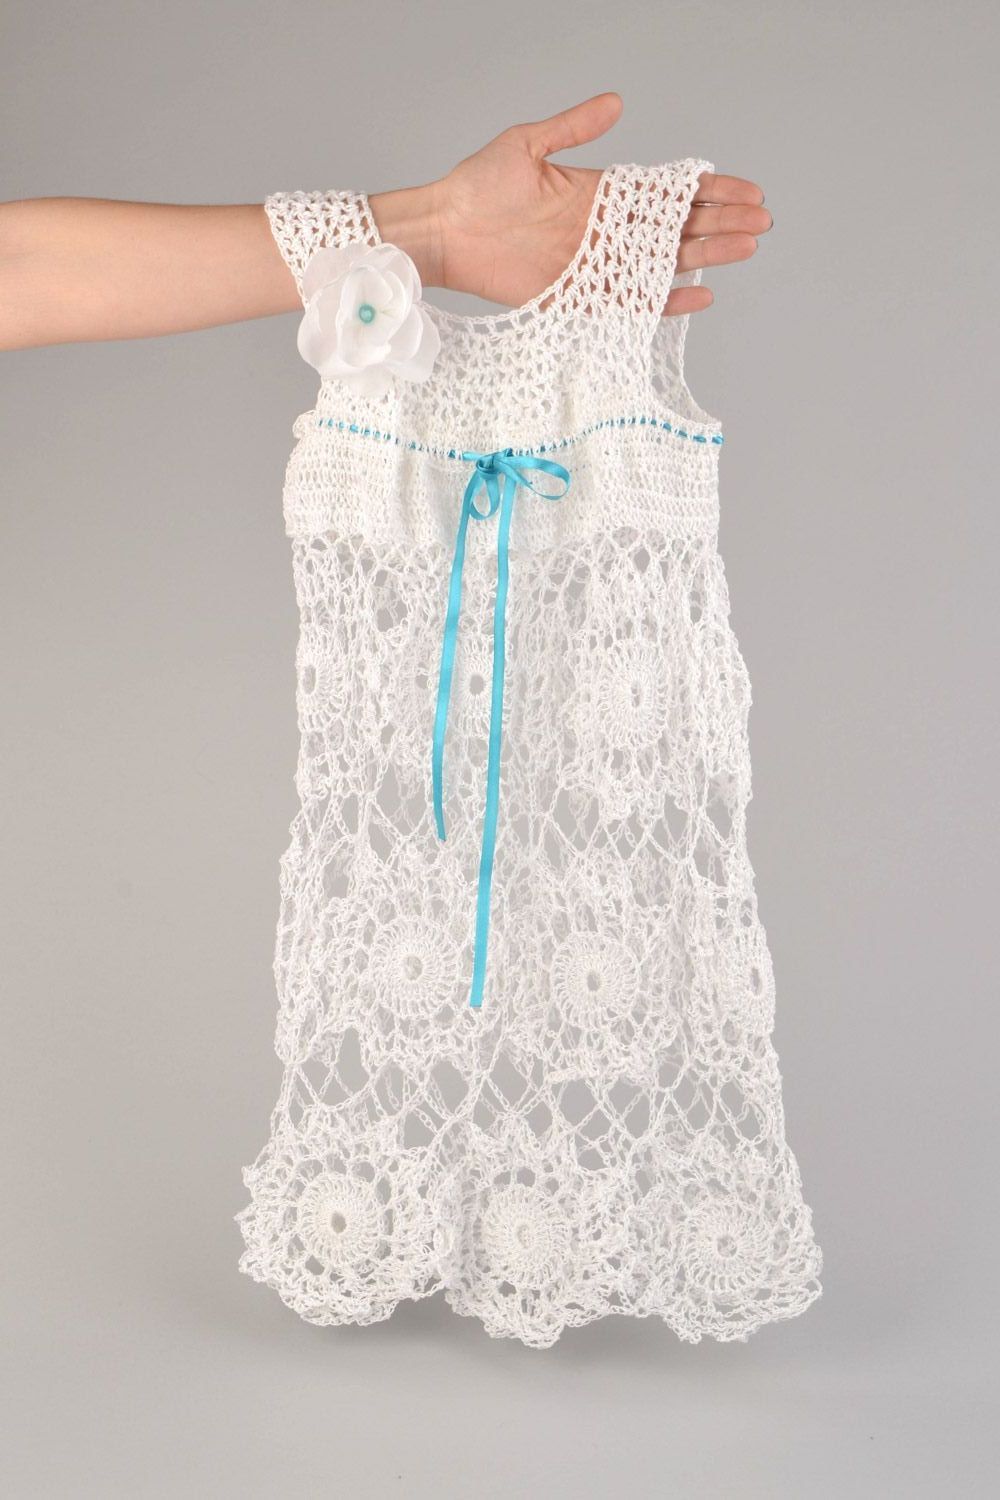 Vestido infantil tejido a ganchillo de hilos acrílicos blanco artesanal  foto 1